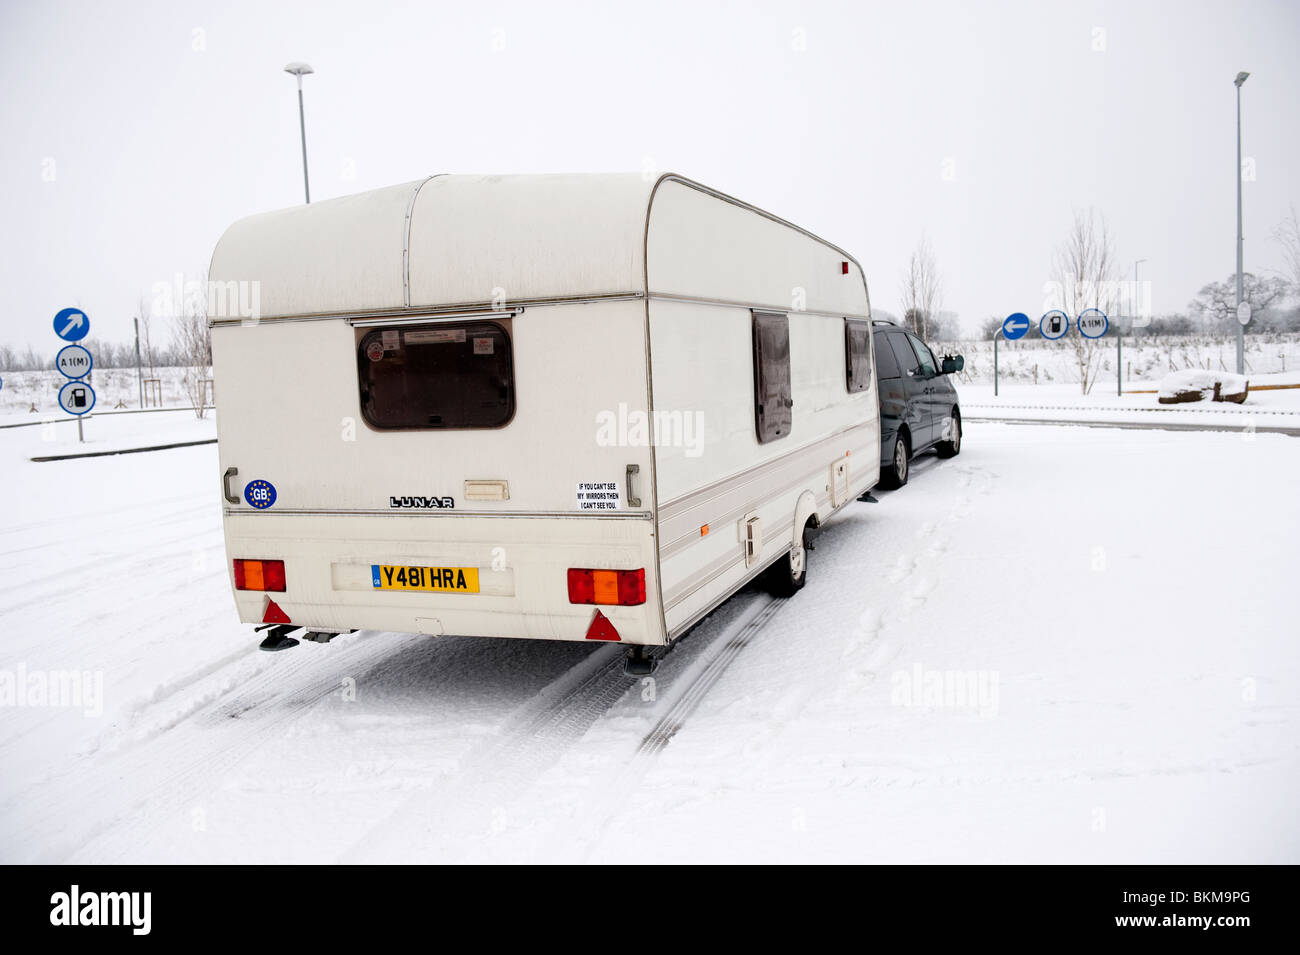 Caravane coincé dans la neige et la glace en hiver Banque D'Images